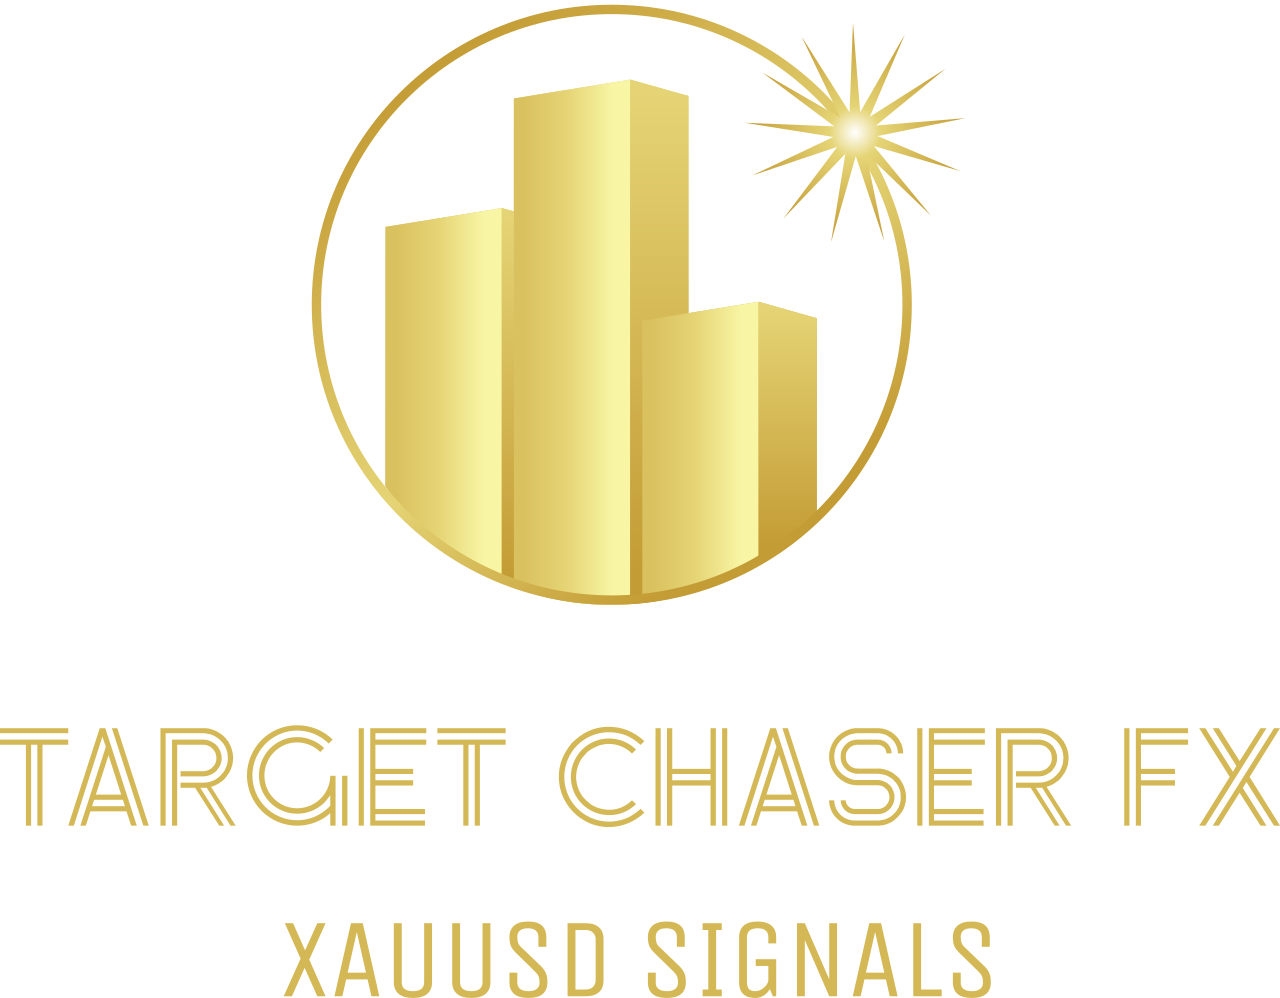 TARGET CHASER FX's logo